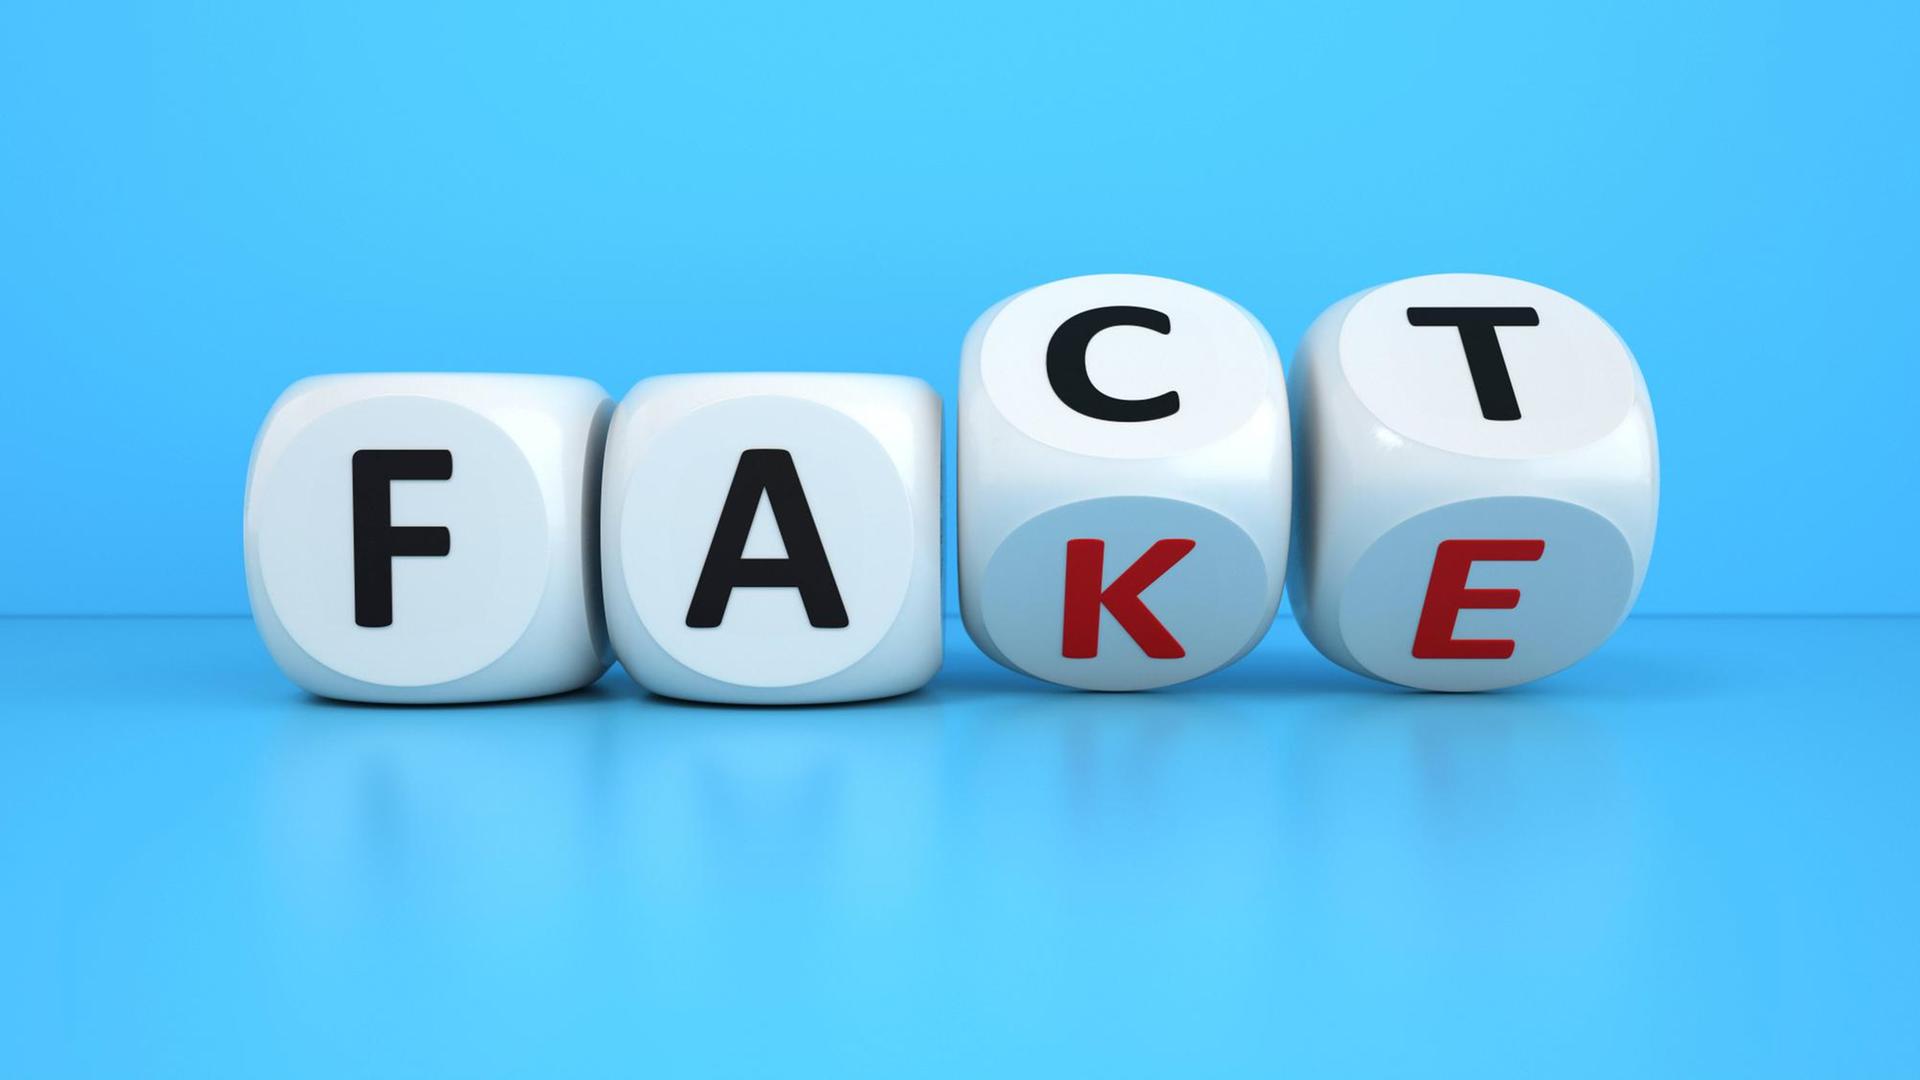 Würfel, die auf der Kippe stehen und sowohl auf "Fact", als auch auf "Fake" landen könnten.